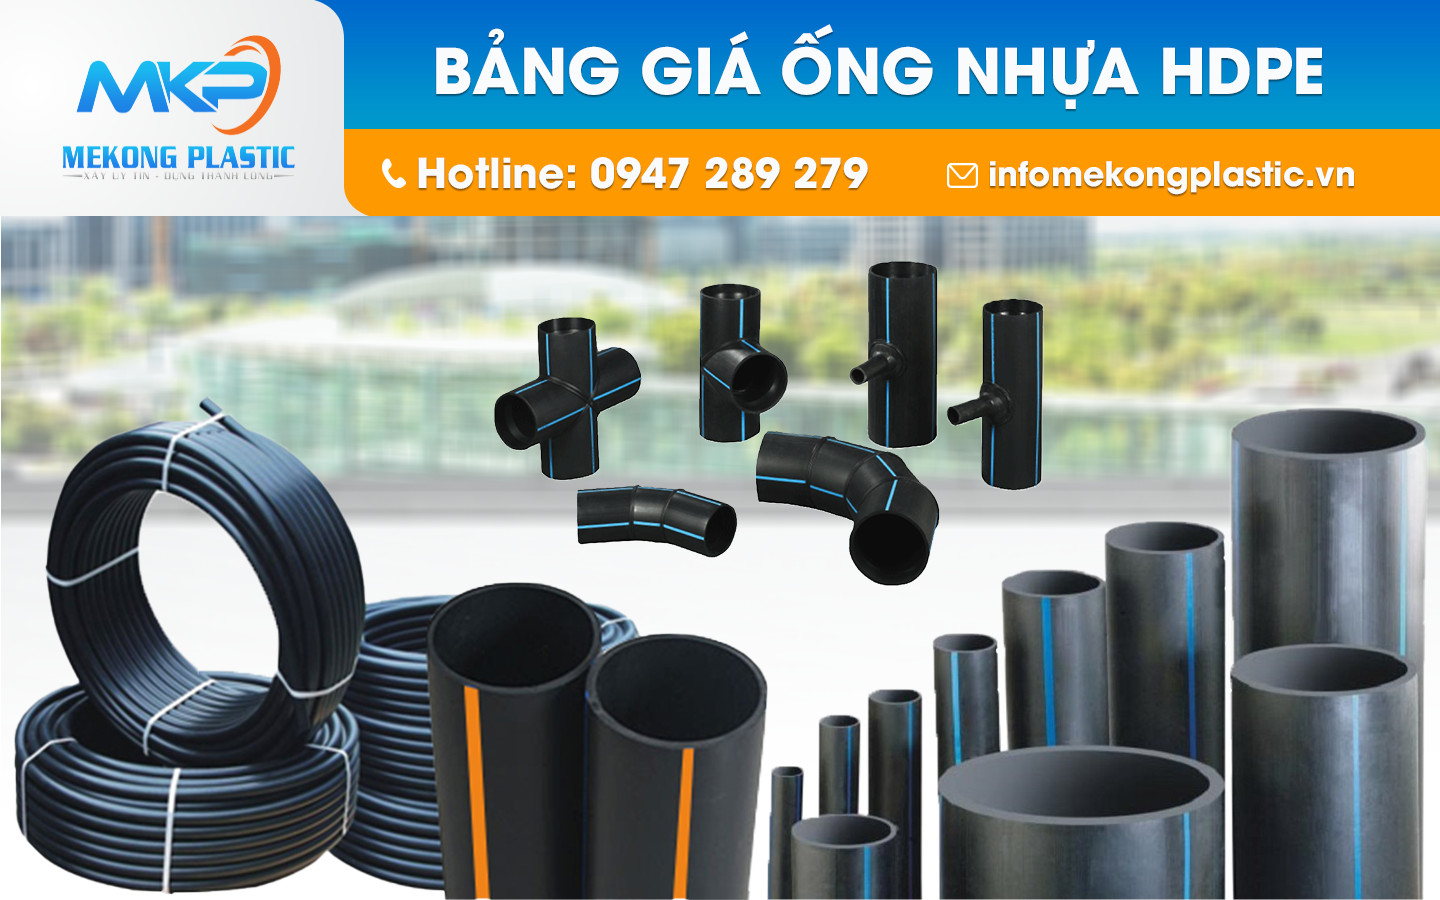 Nhà phân phối ống nhựa HDPE giá tốt, chất lượng tại Phú Yên